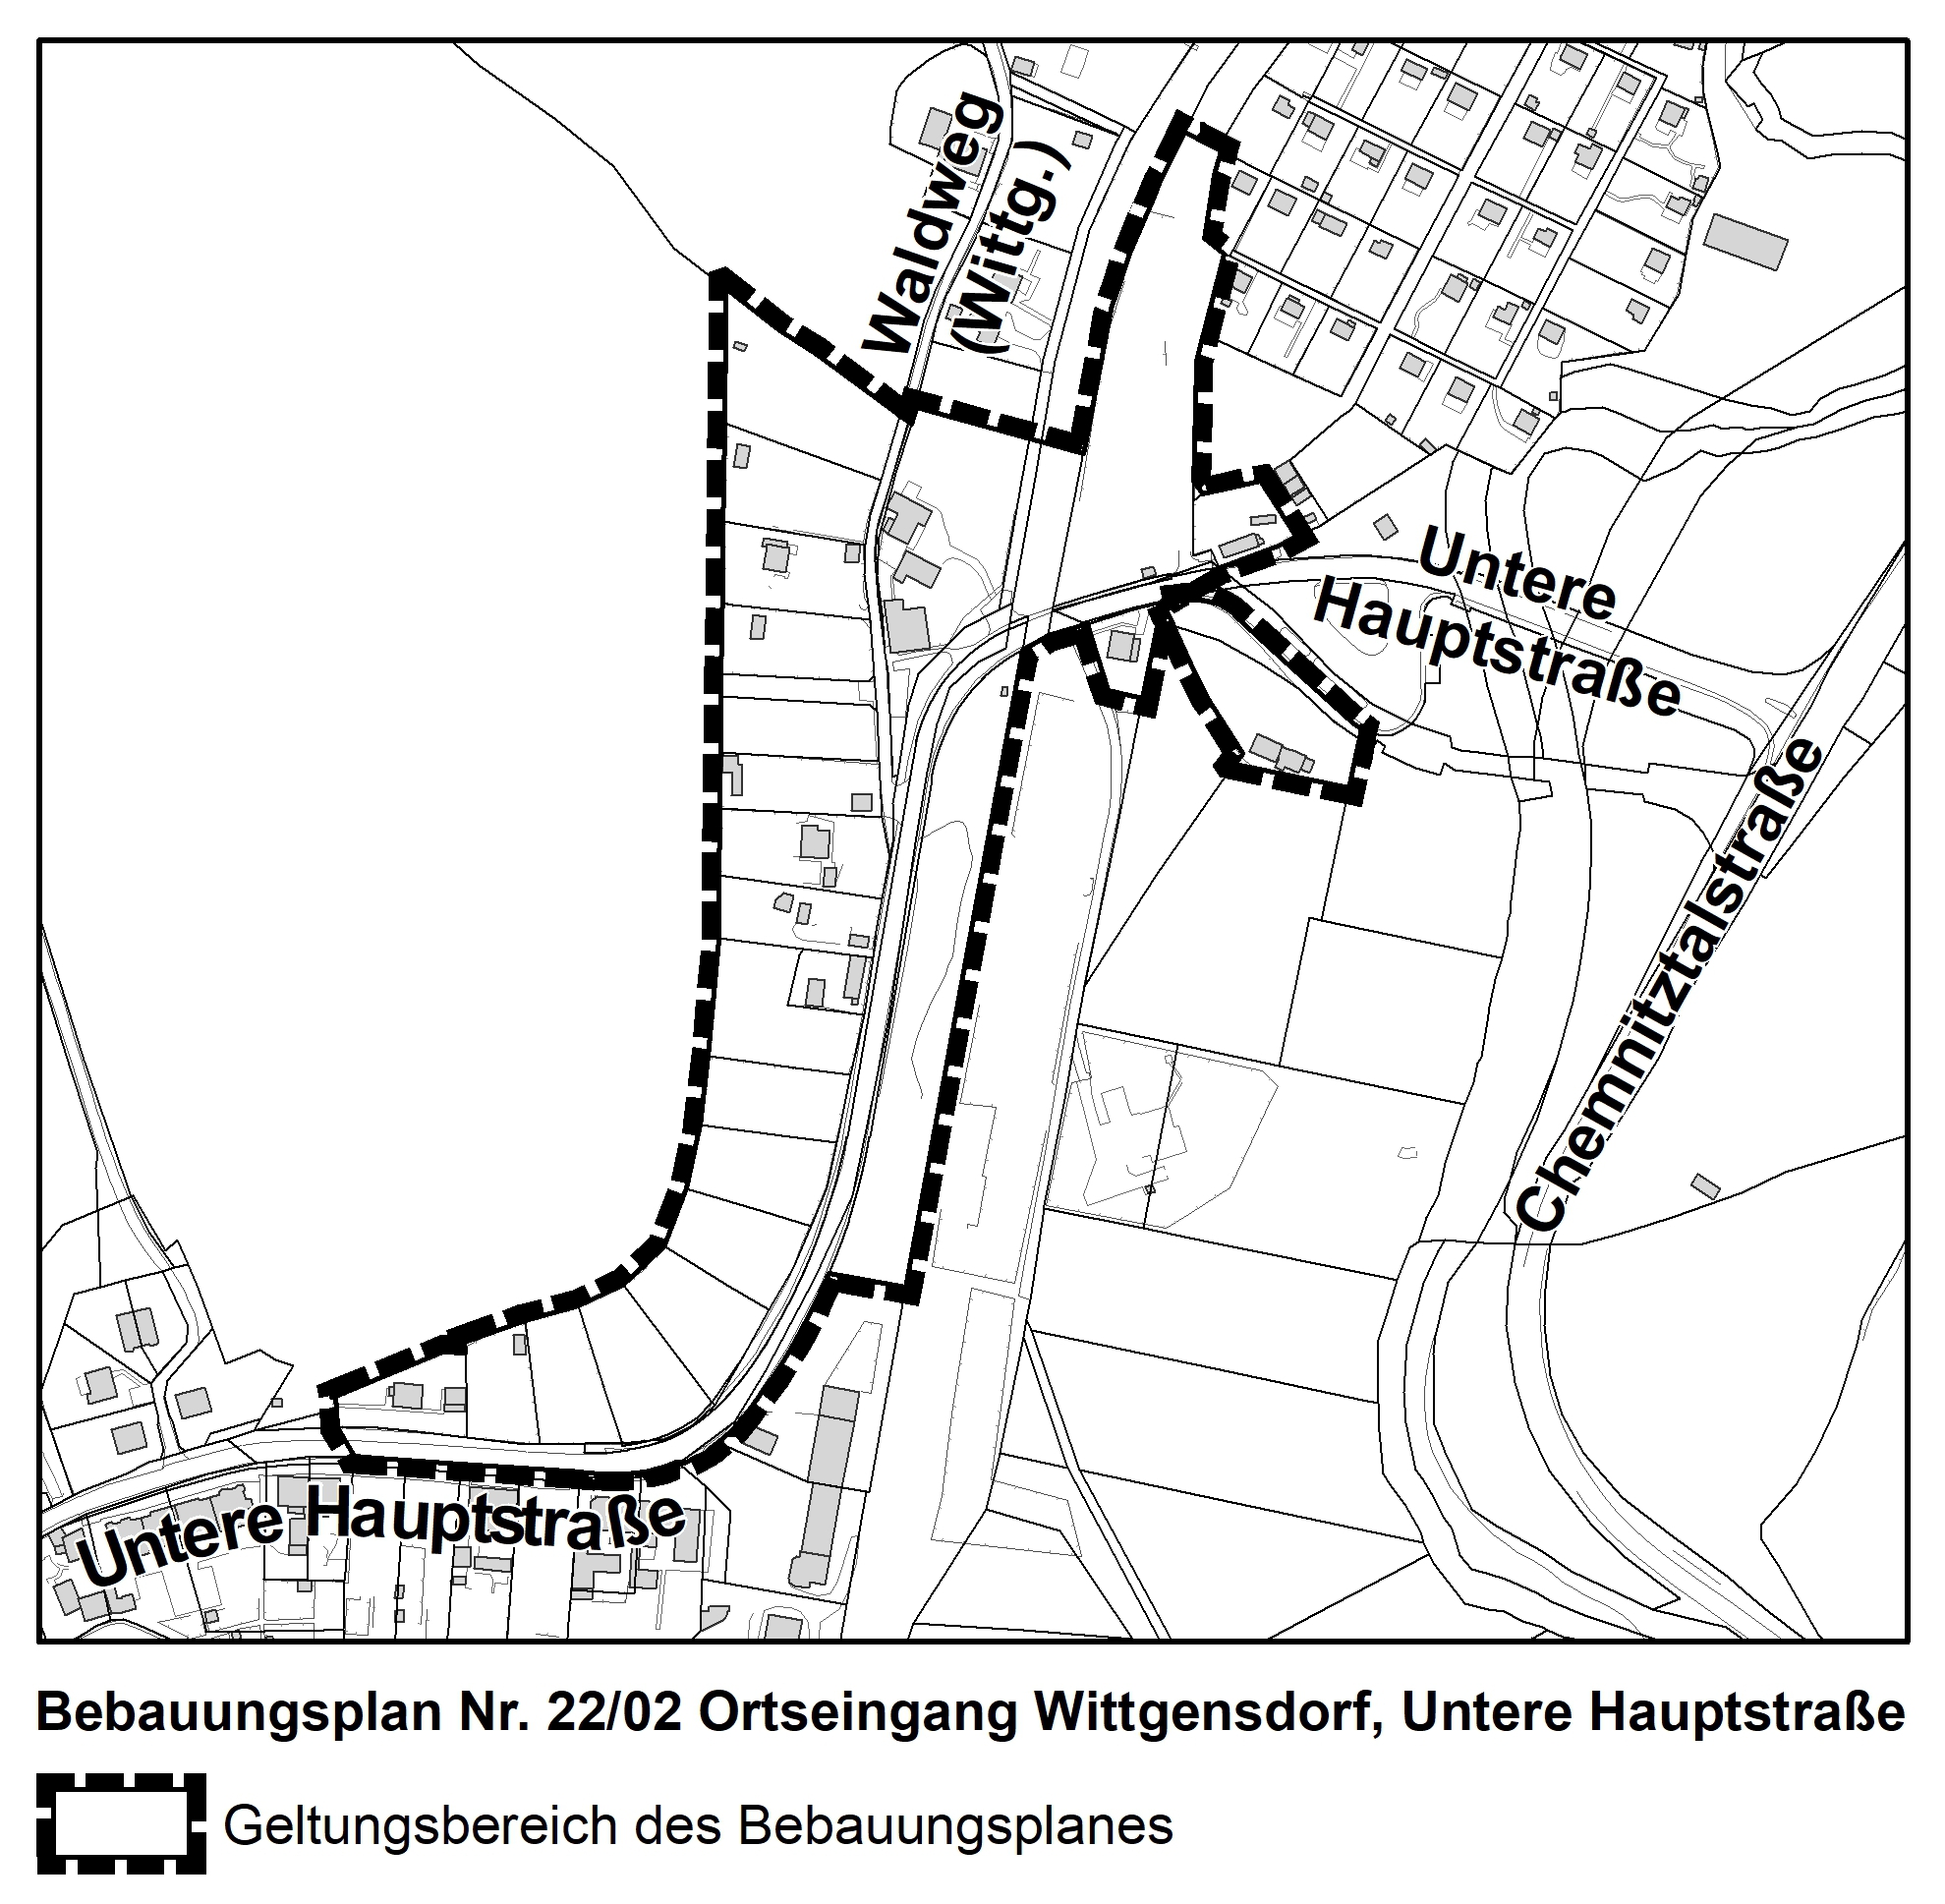 Veröffentlichung im Internet des Bebauungsplanes Nr. 22/02 „Ortseingang Wittgensdorf, Untere Hauptstraße“